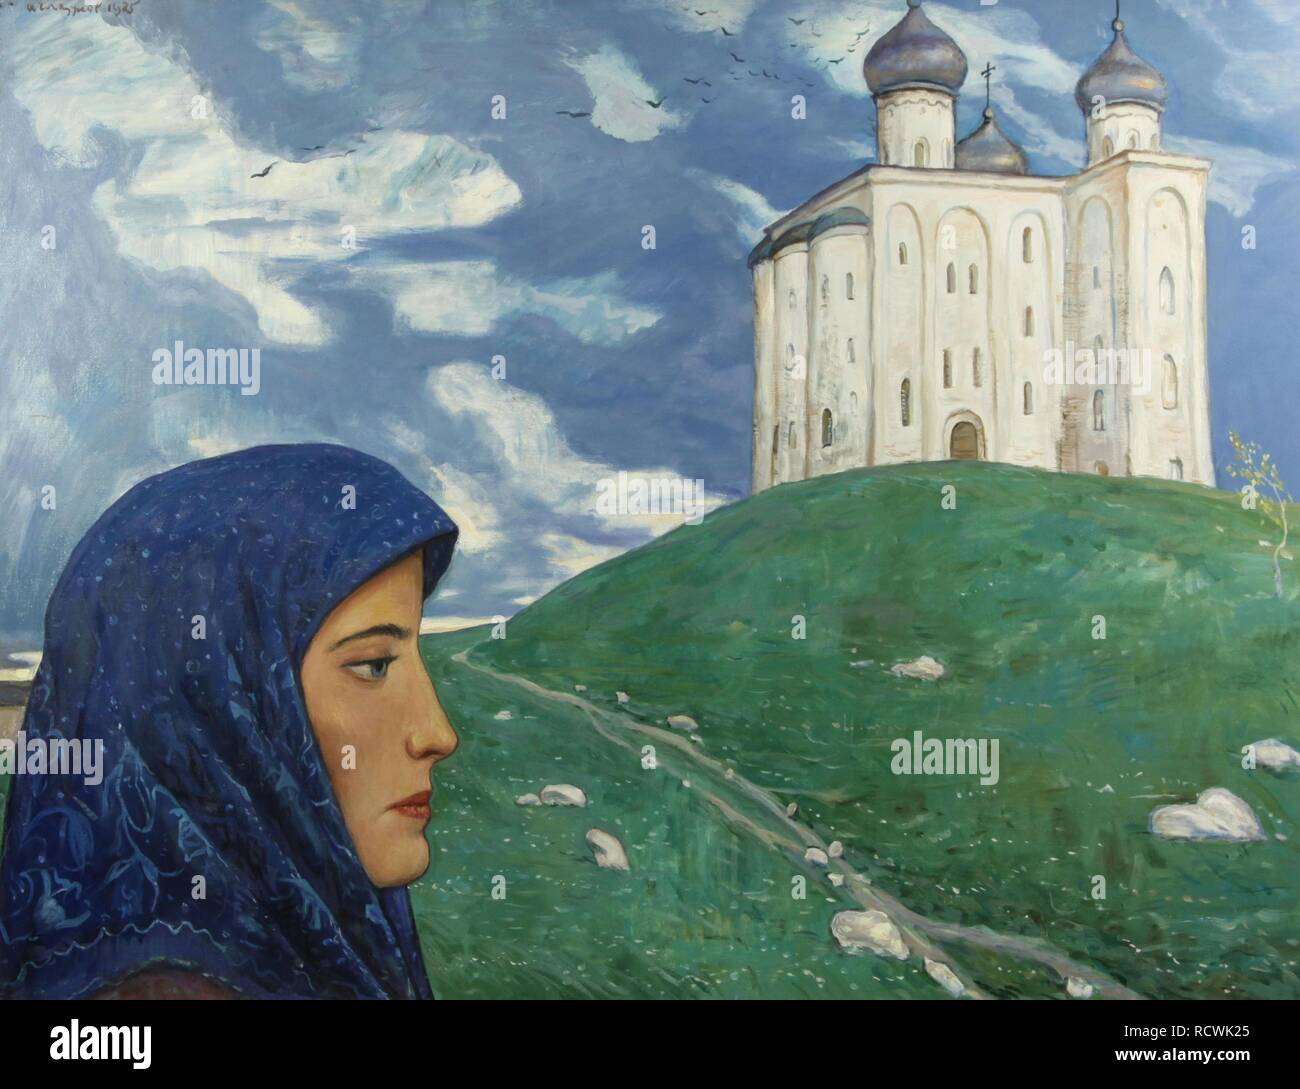 Ilya glazunov immagini e fotografie stock ad alta risoluzione - Alamy